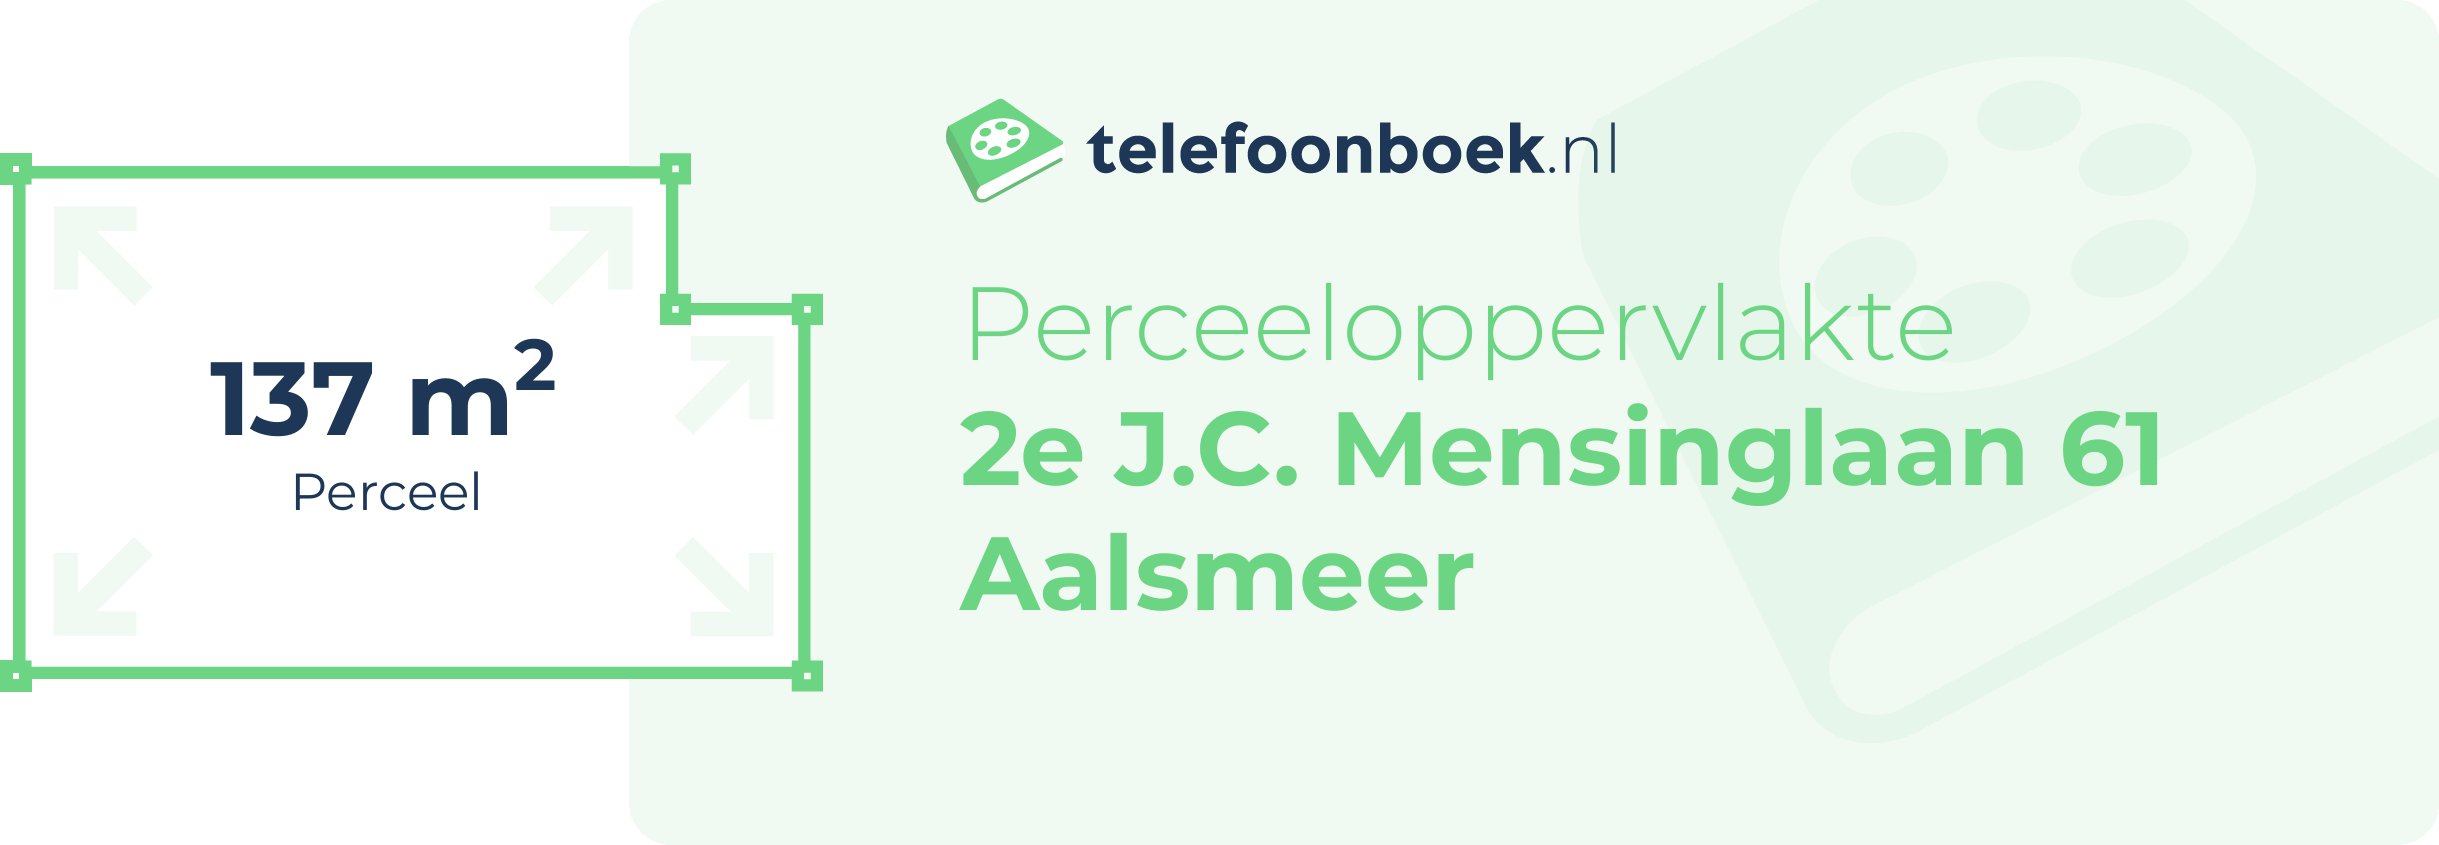 Perceeloppervlakte 2e J.C. Mensinglaan 61 Aalsmeer